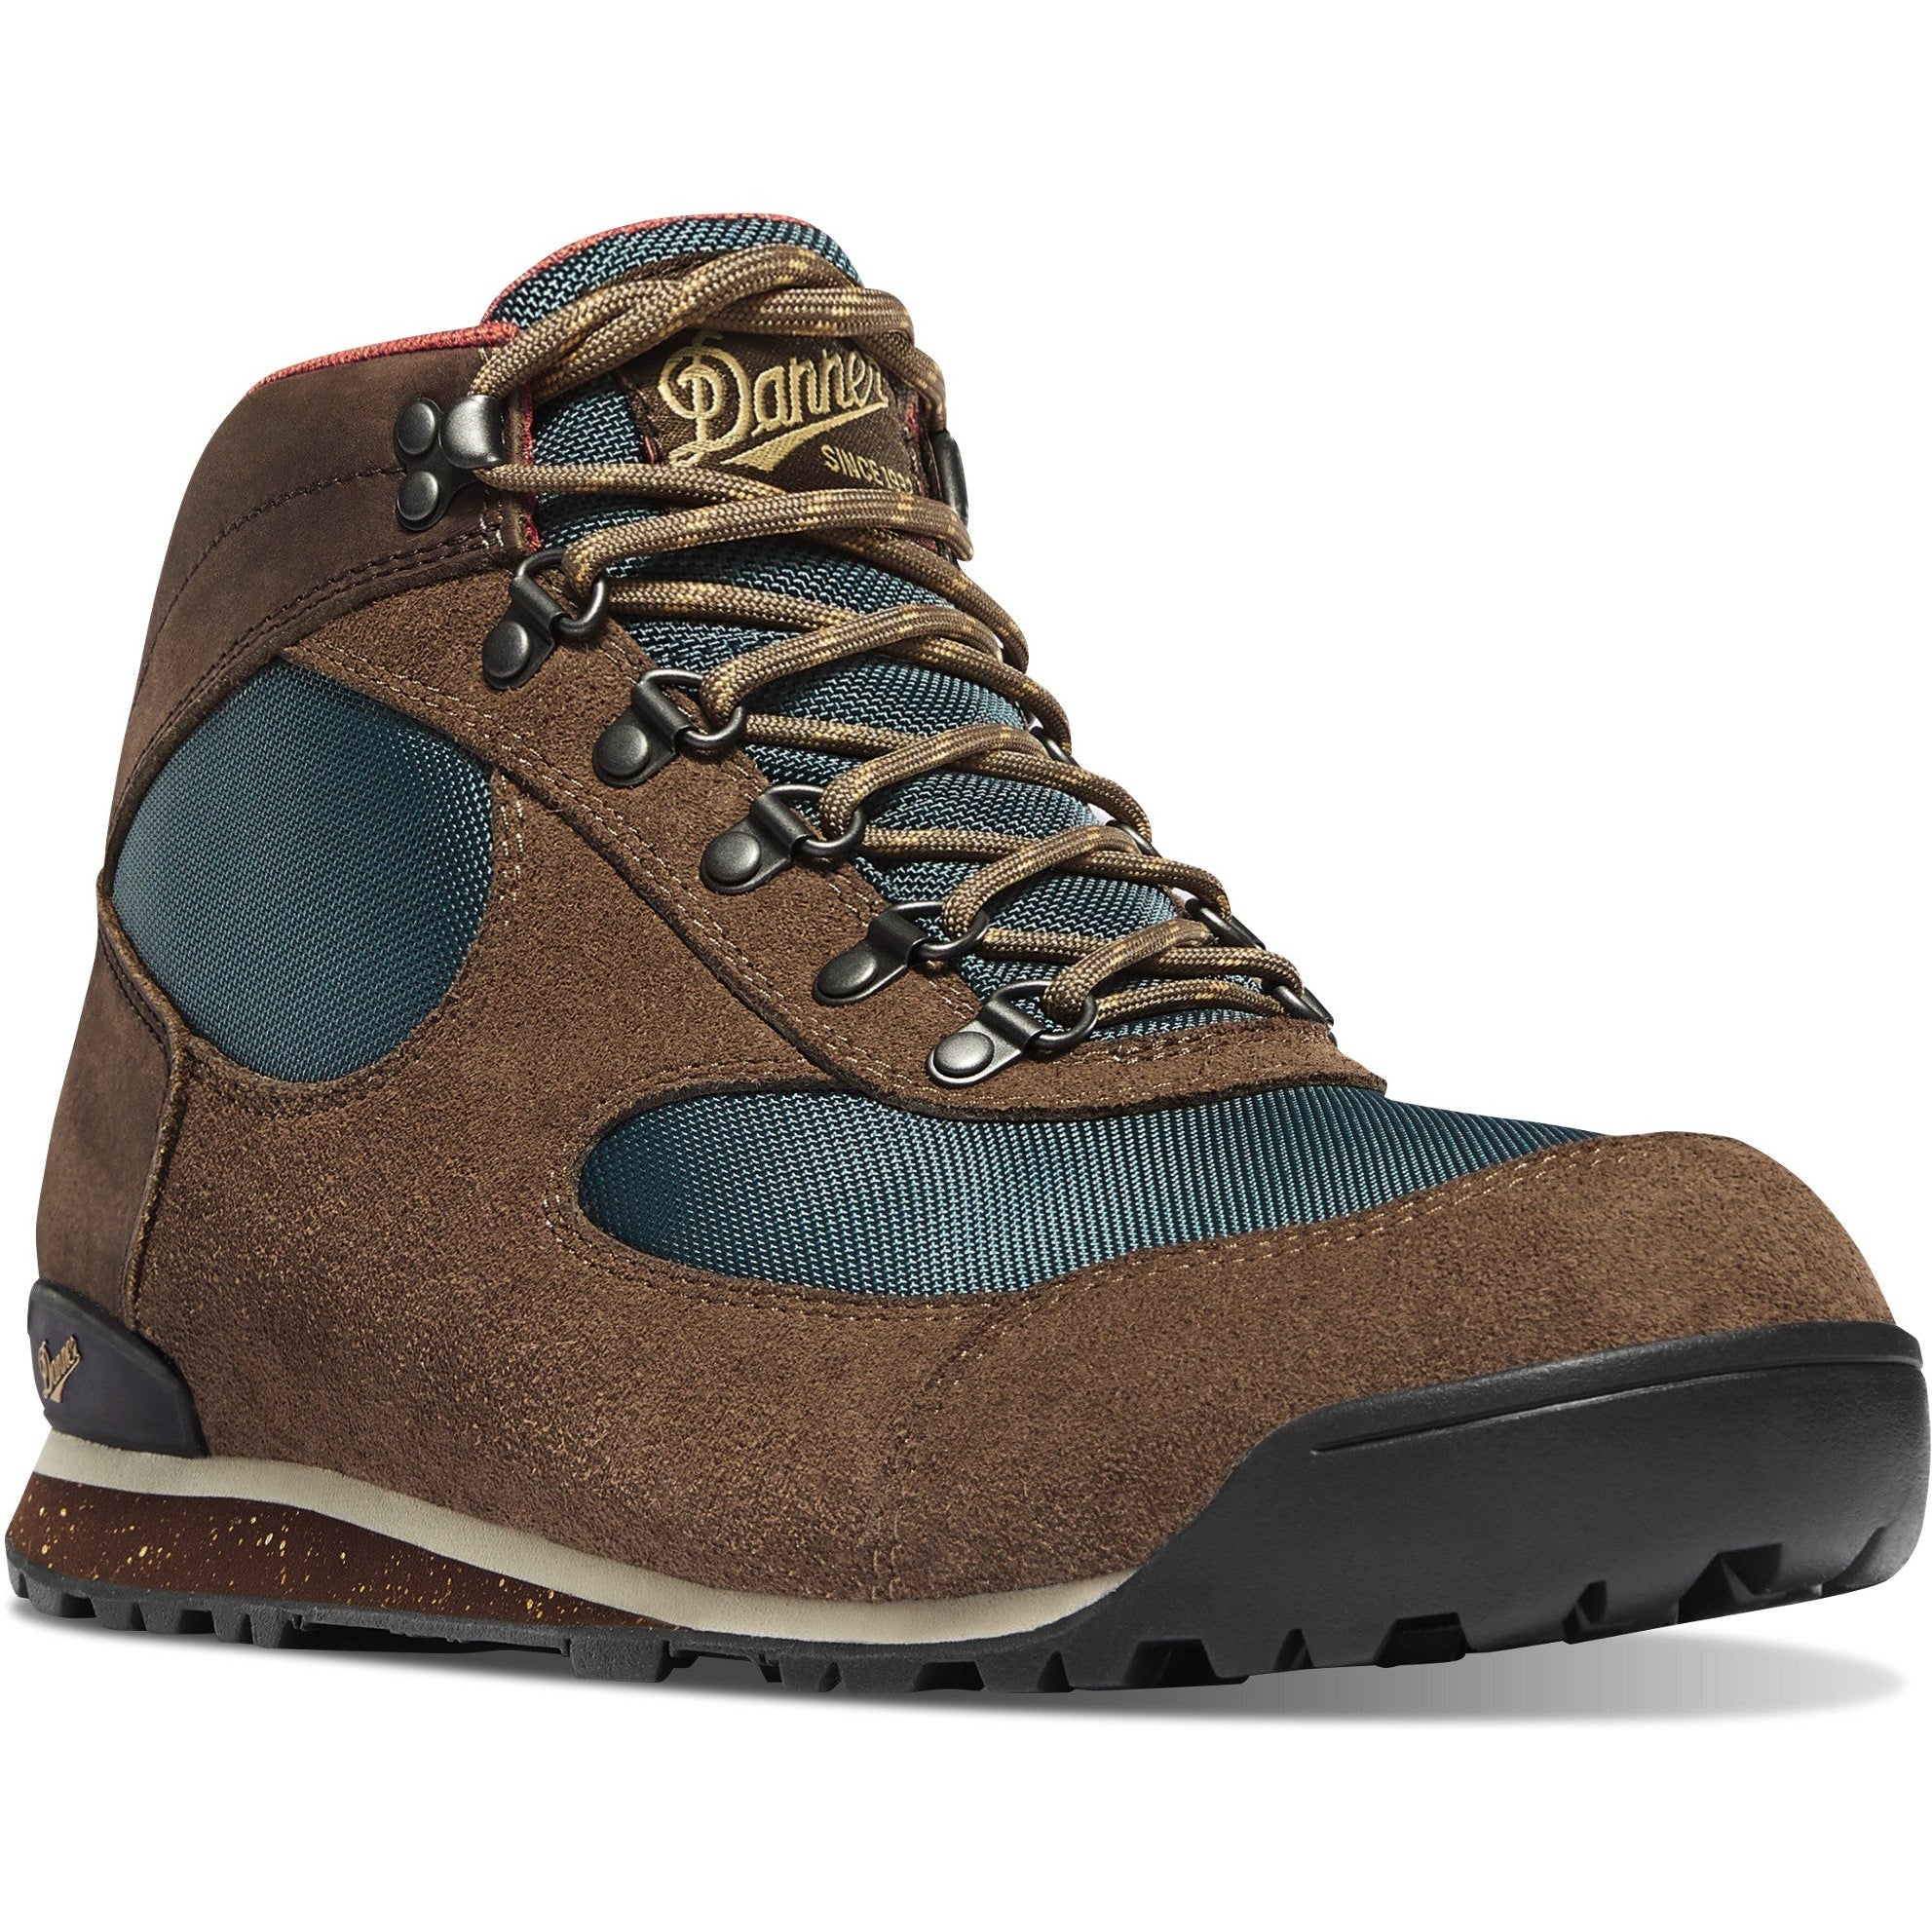 Danner Men's Jag Dry Weather 4.5" Lifestyle Shoe - Brown - 37240 7 / Medium / Brown - Overlook Boots